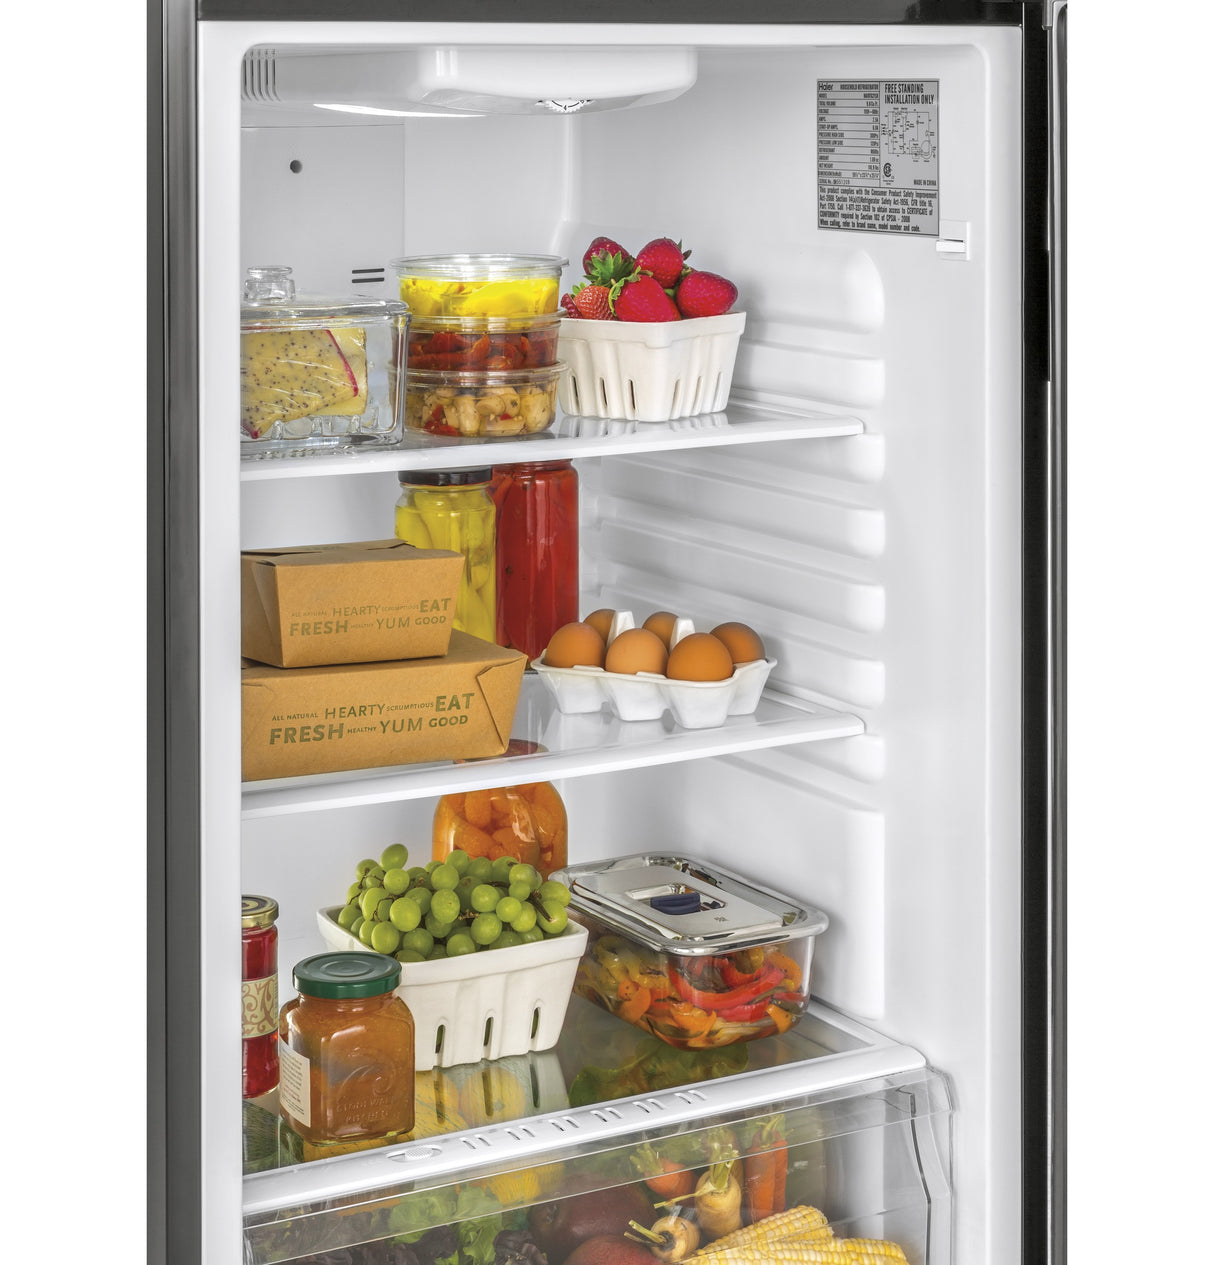 9.8 Cu. Ft. Top Freezer Refrigerator - (HA10TG21SB)